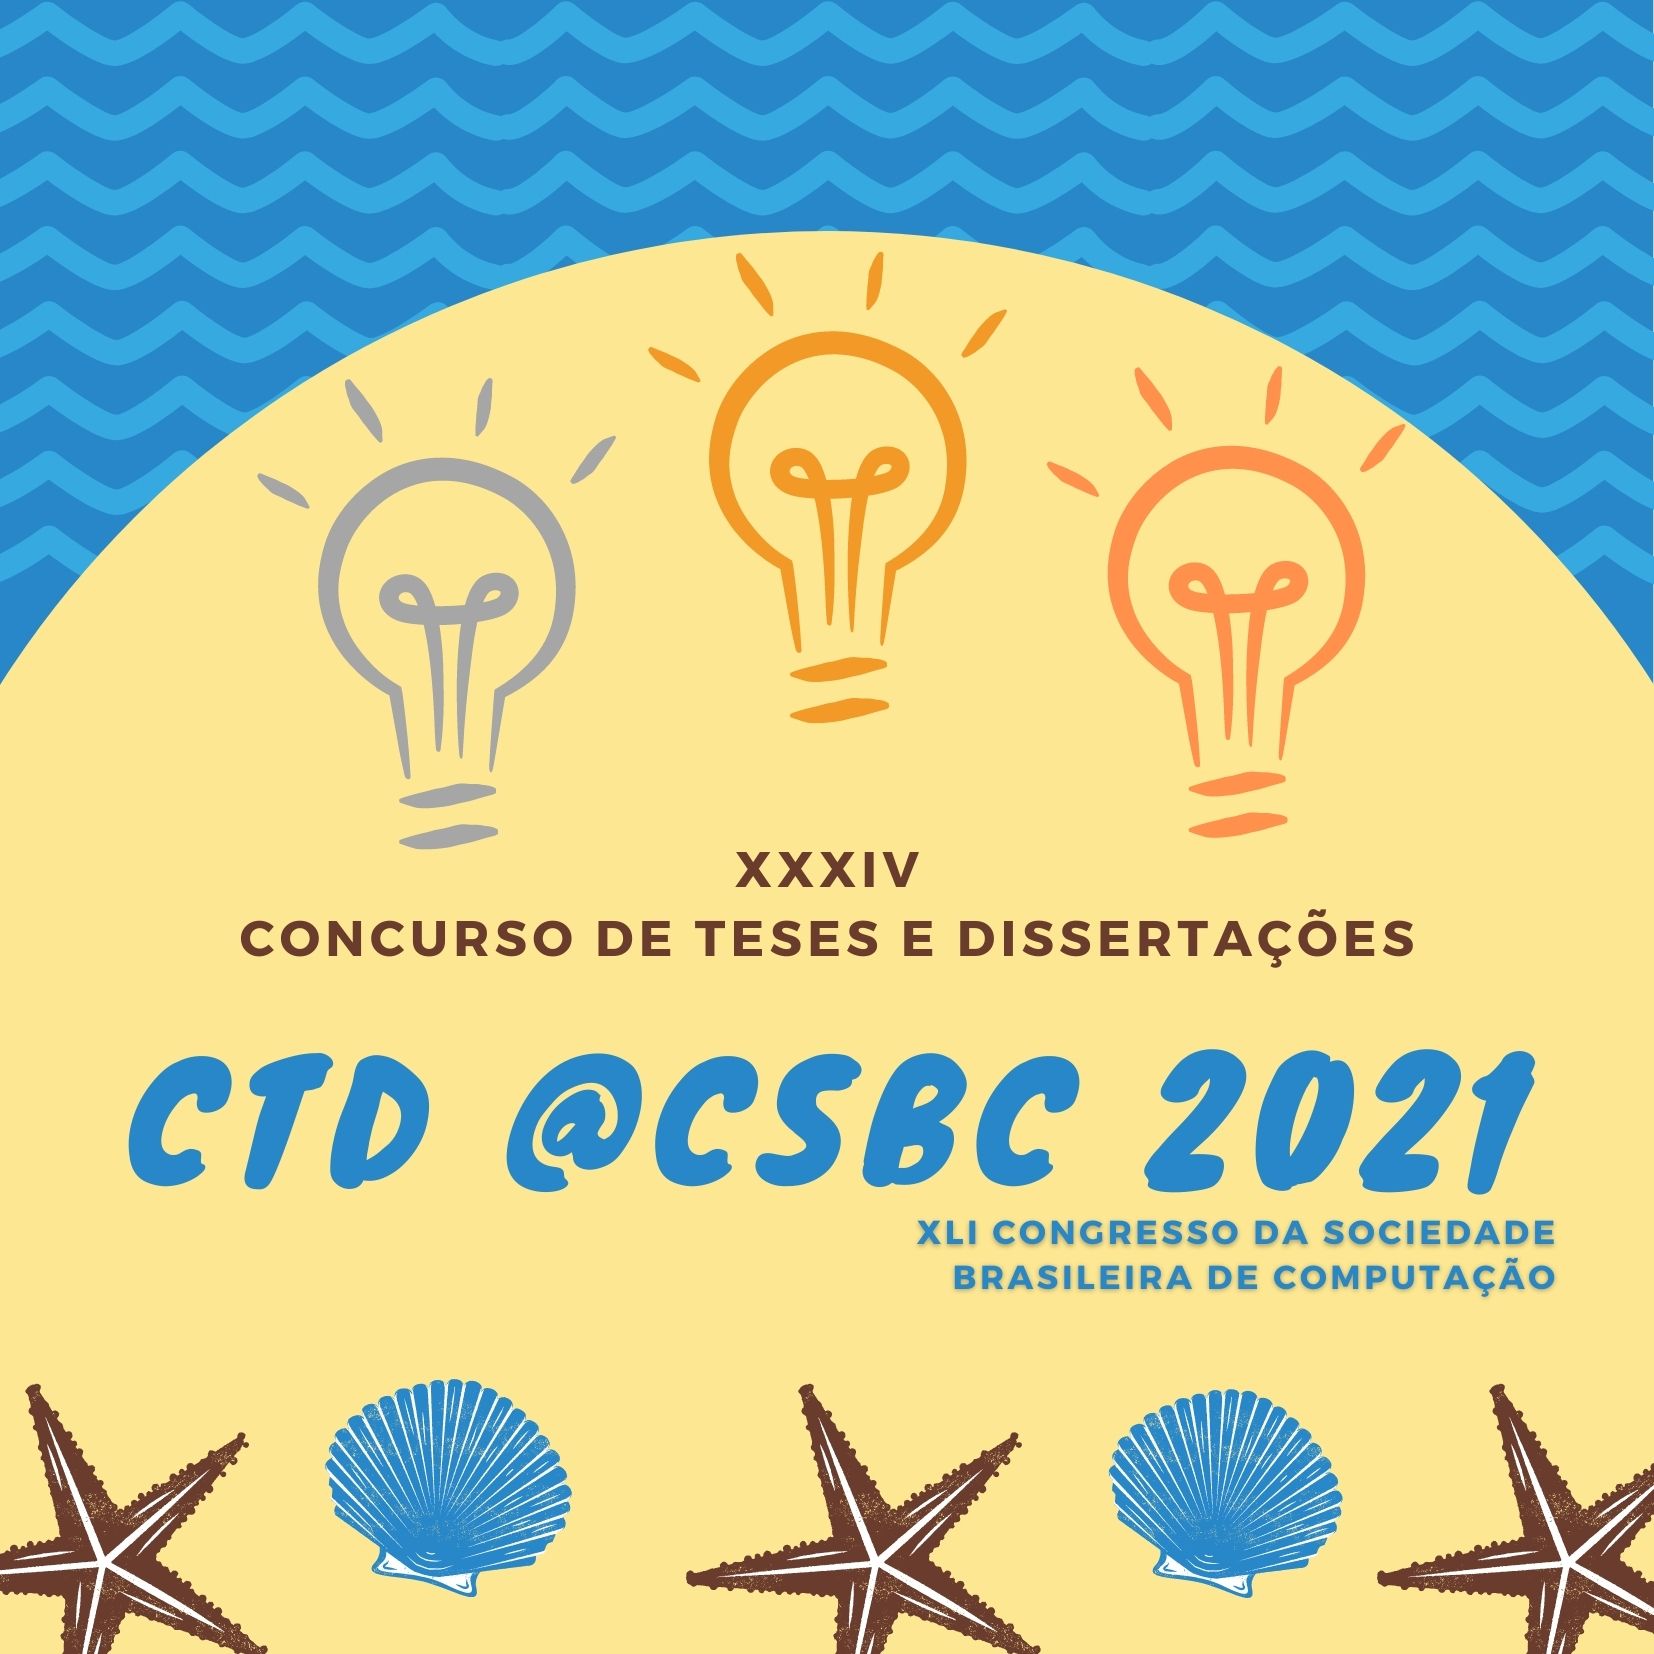 Confira as Melhores Teses e Dissertações do CTD @CSBC 2021